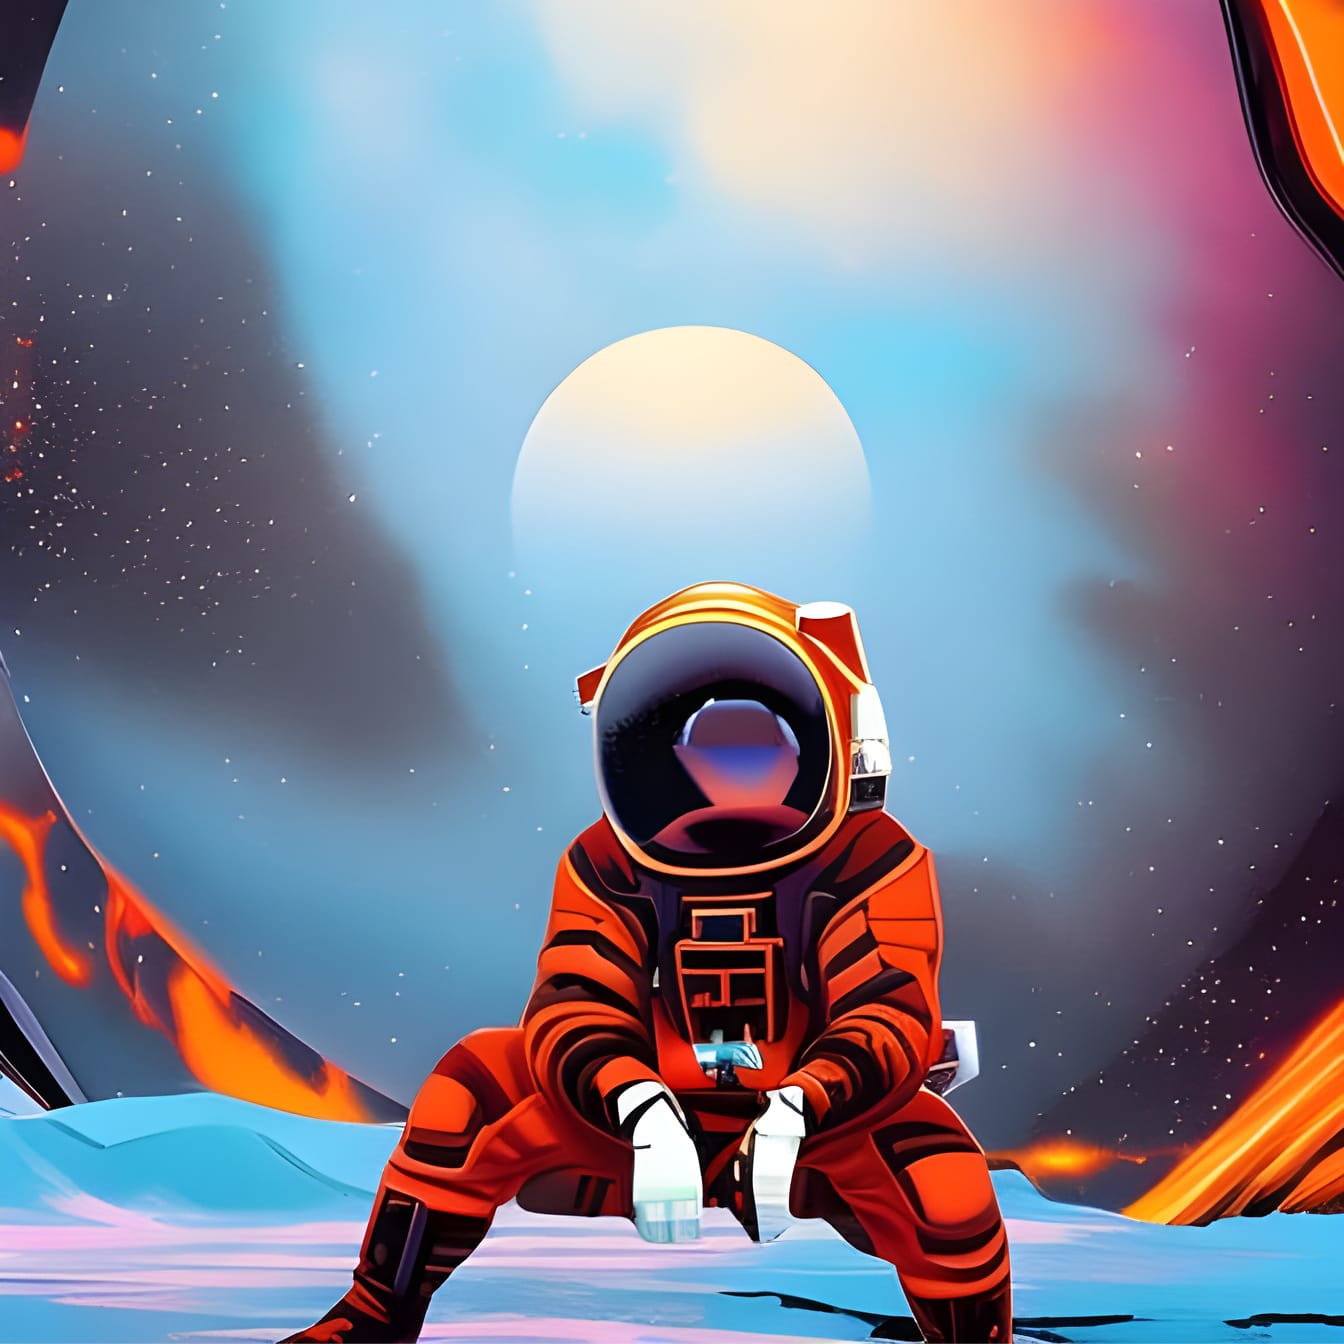 Современное поп-арт изображение скучающего астроселфи, сидящего в одиночестве в далеком инопланетном мире